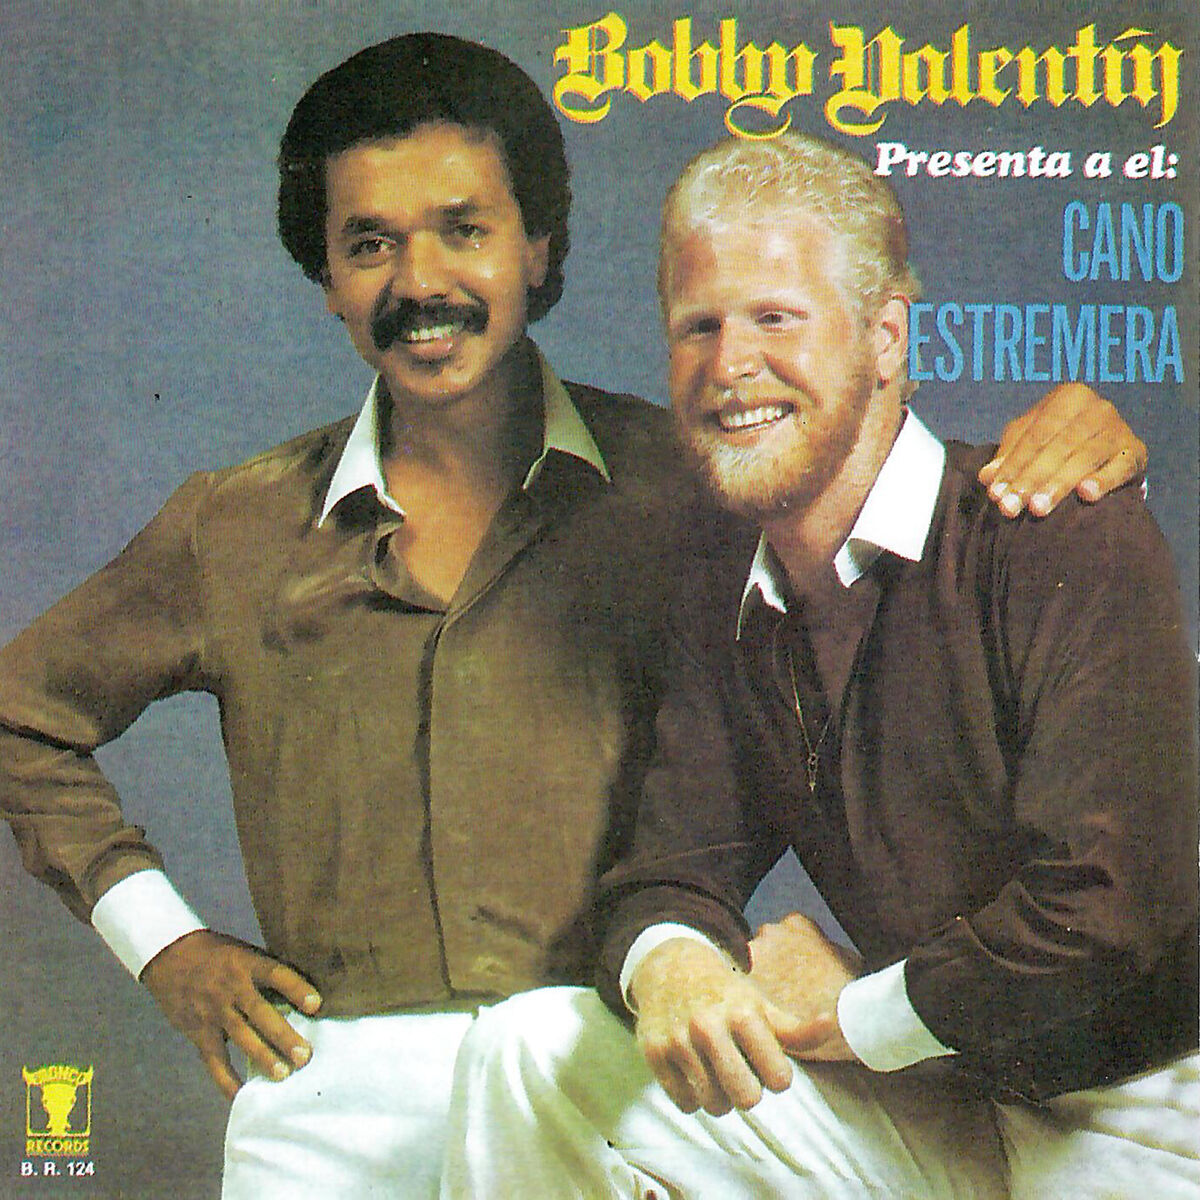 ボビー・バレンティンの世界 Historia de Bobby Valentin 全15曲 - ワールドミュージック